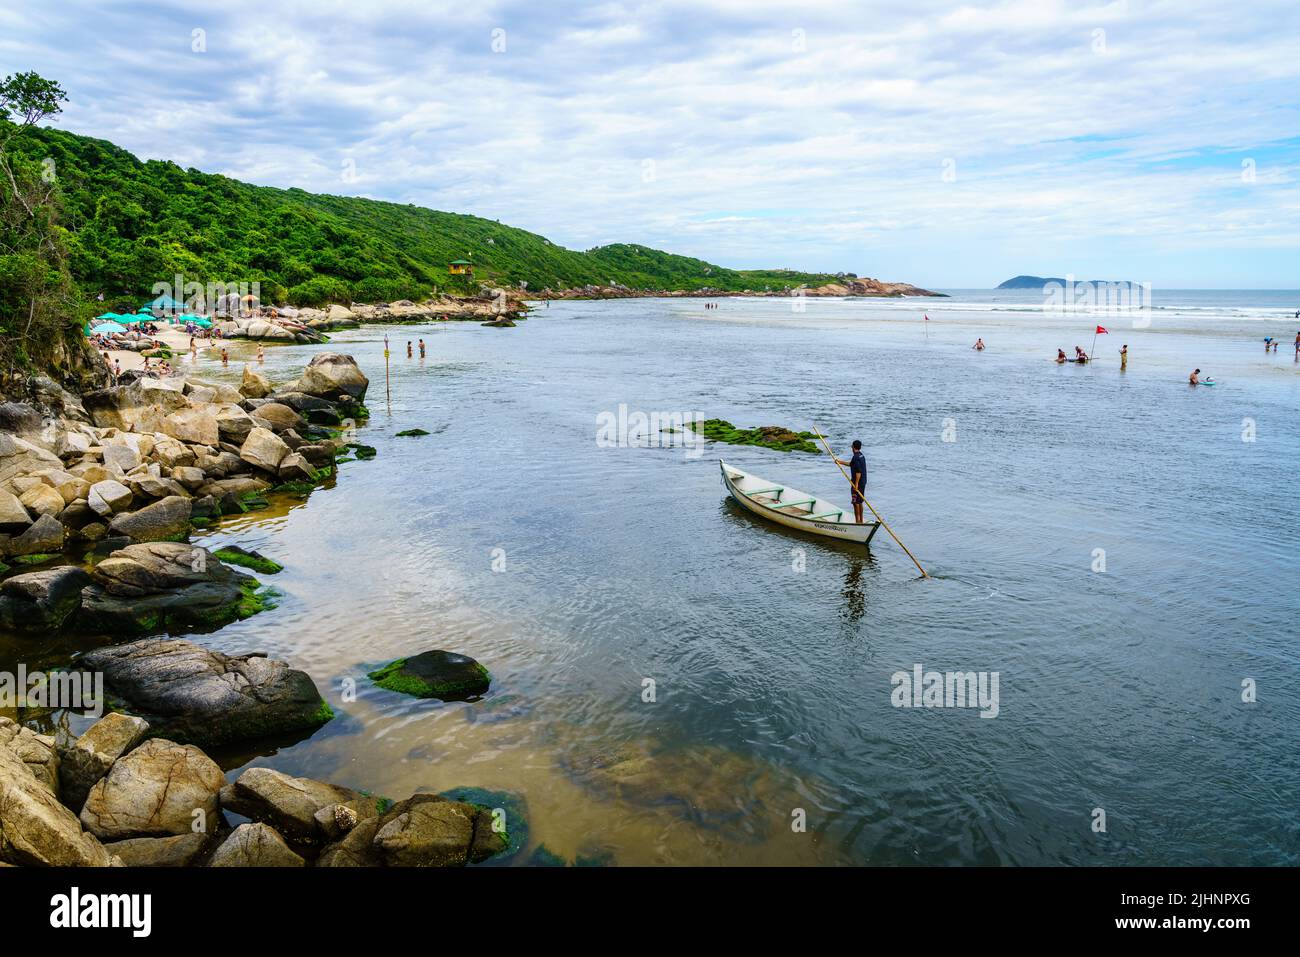 Guarda do Embau, 14 janvier 2022: Rio da Madre séparant la plage de Praia Guarda do Embau du continent Banque D'Images